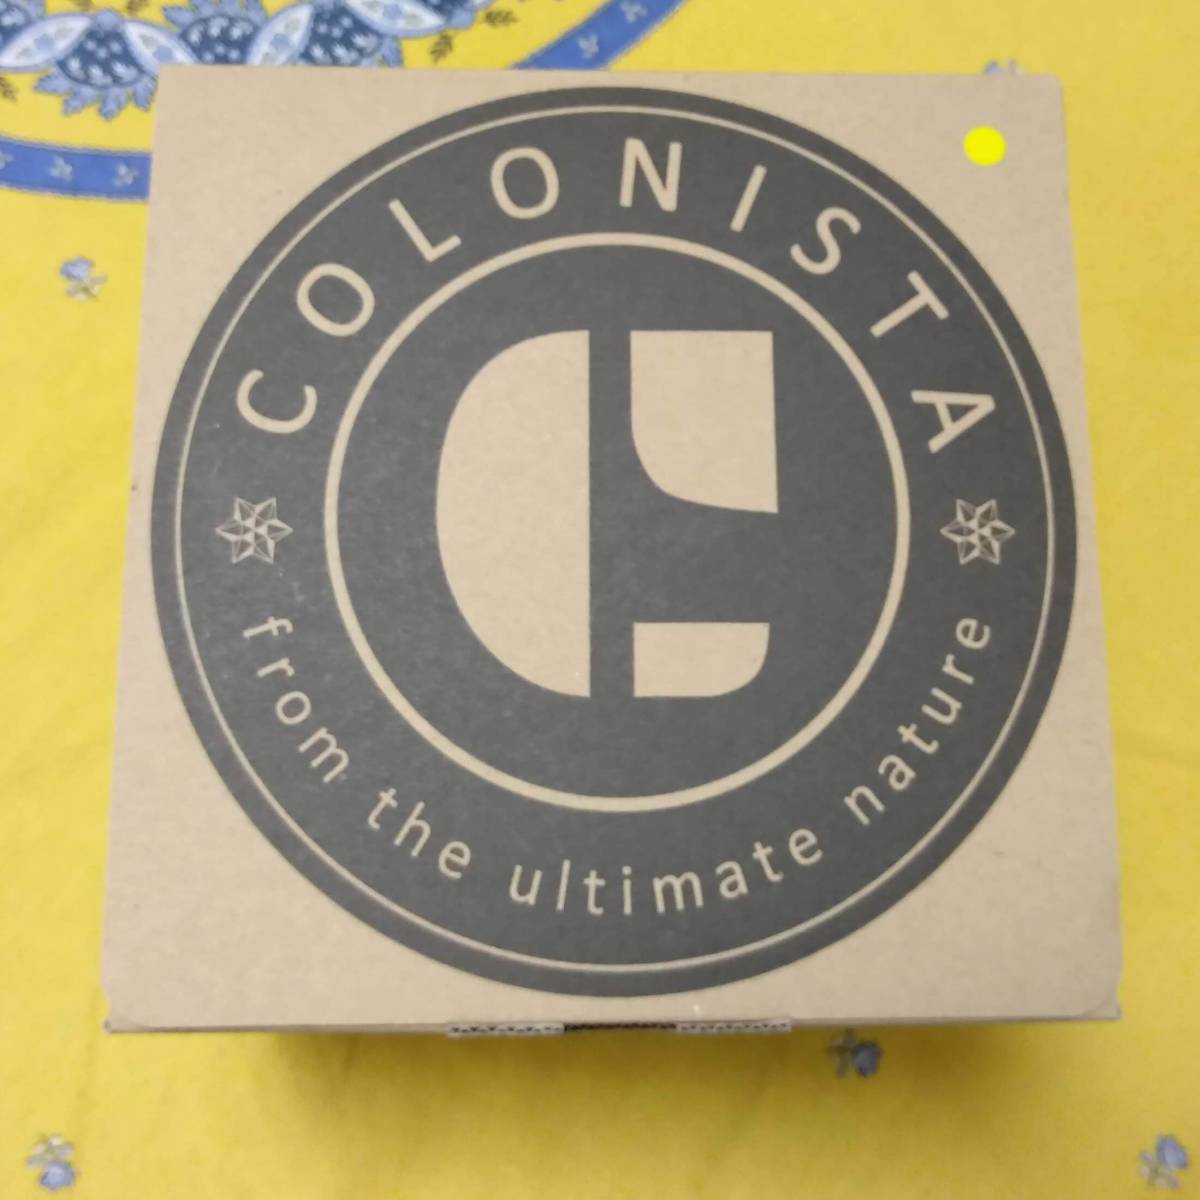 超歓迎 COLONISTA LEDランタンシェード Yellow コンペイトウ CONPE10 コロニスタ その他